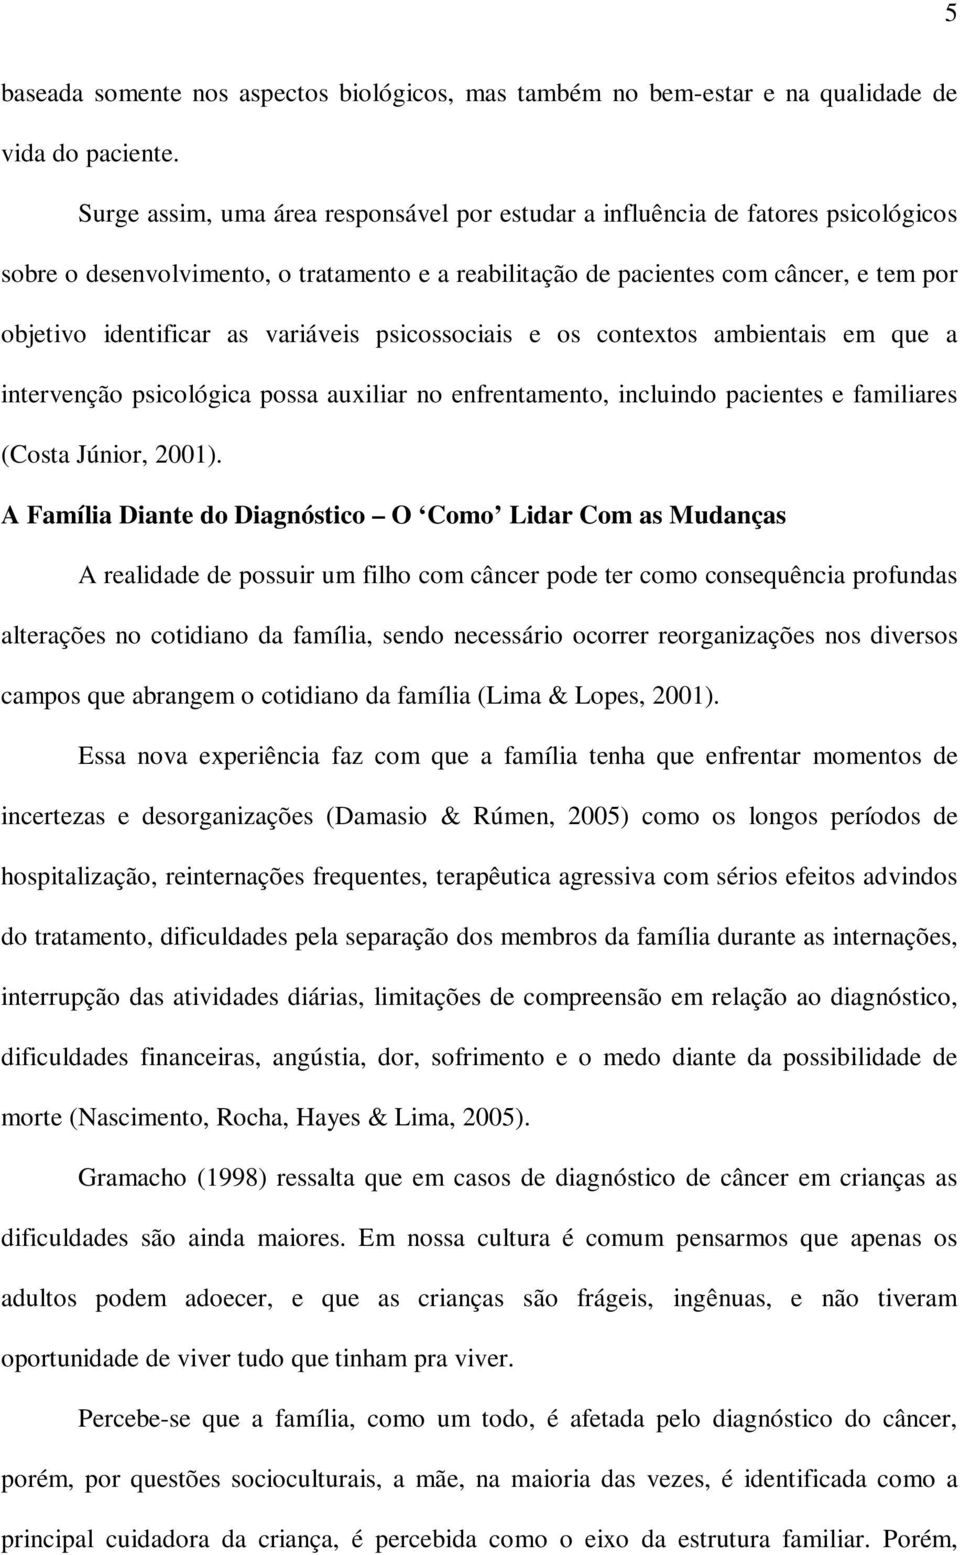 variáveis psicossociais e os contextos ambientais em que a intervenção psicológica possa auxiliar no enfrentamento, incluindo pacientes e familiares (Costa Júnior, 2001).